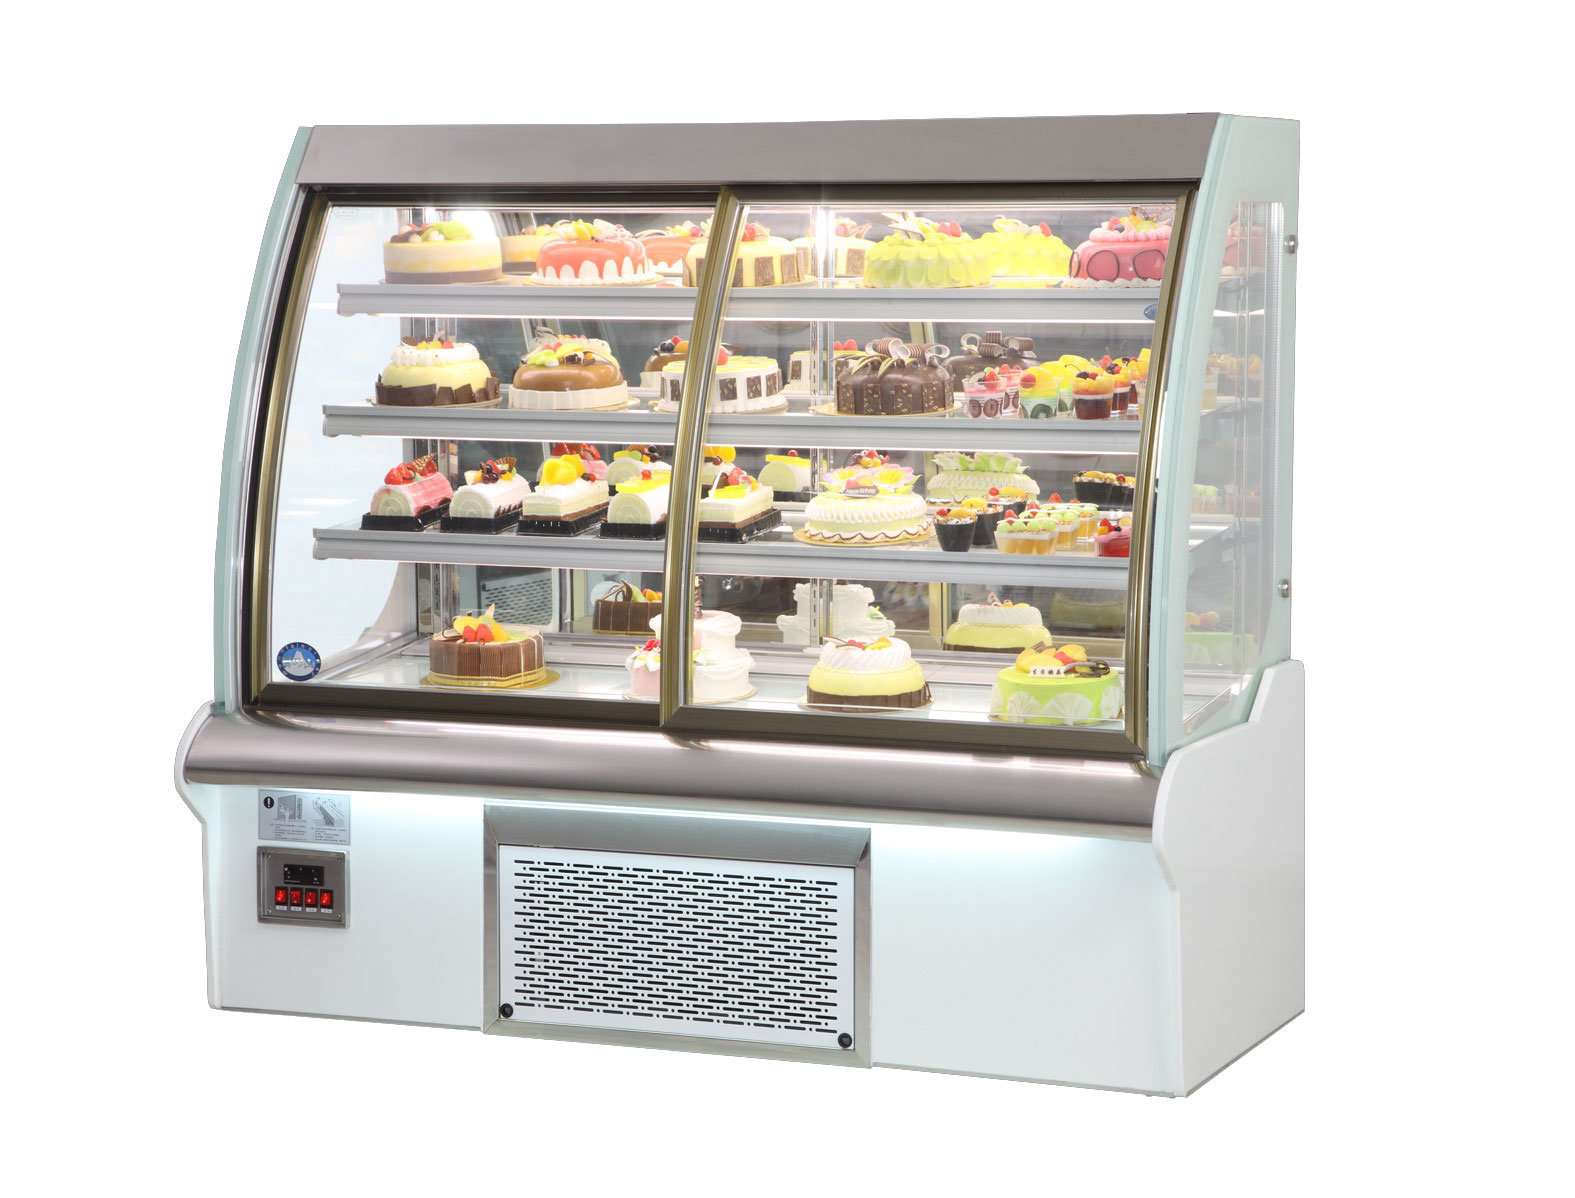 У наш час жоден продуктовий магазин не може обійтися без установки якісного і надійного холодильного обладнання